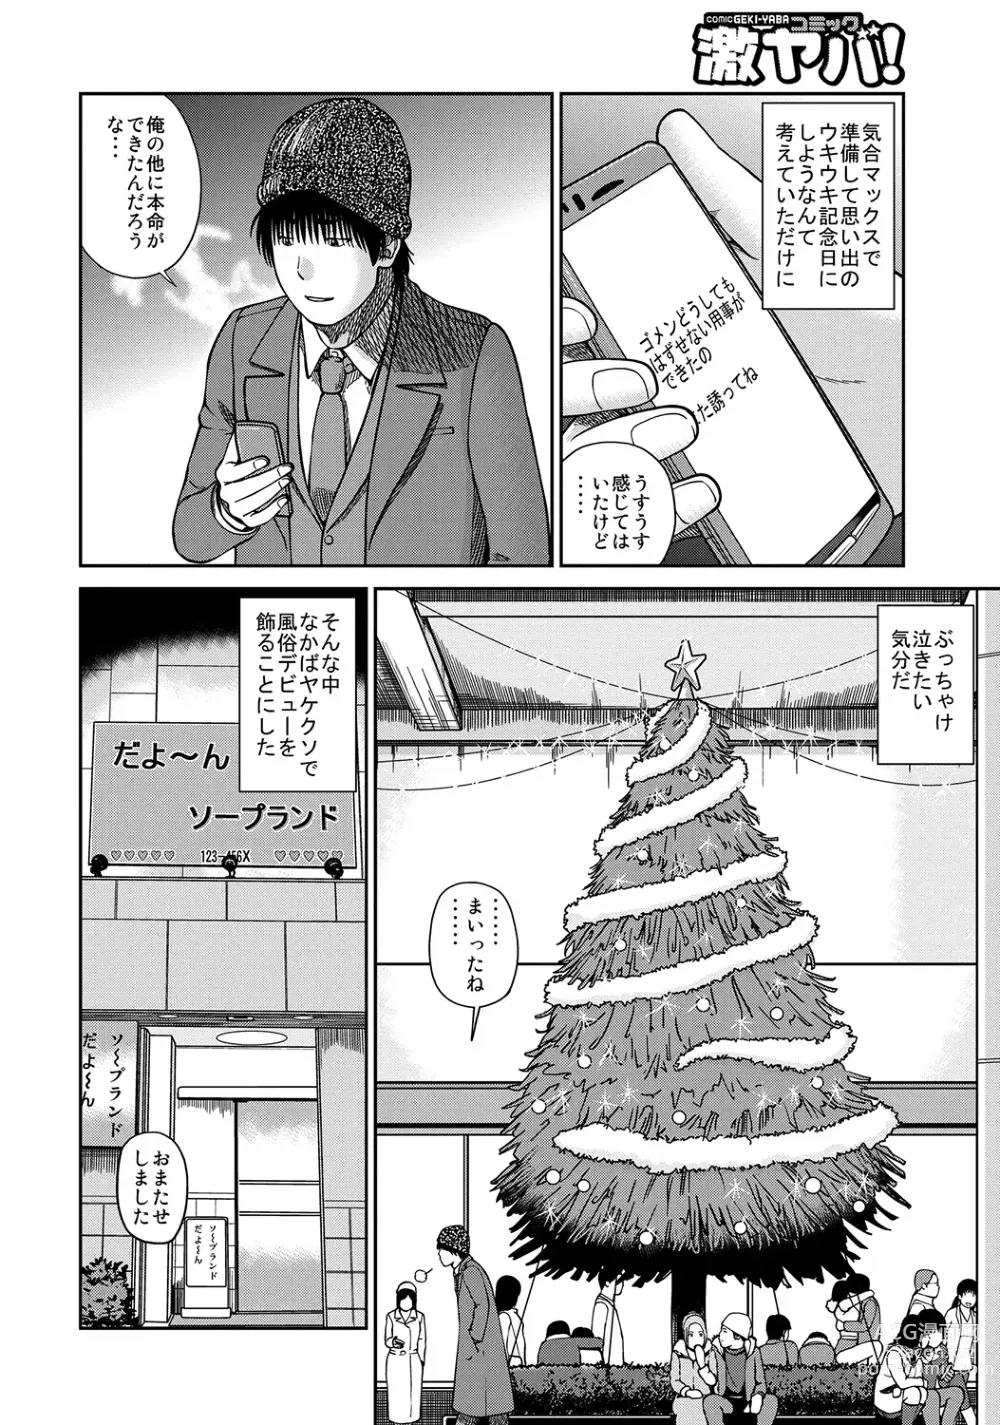 Page 3 of manga WEB Ban COMIC Gekiyaba! Vol. 45